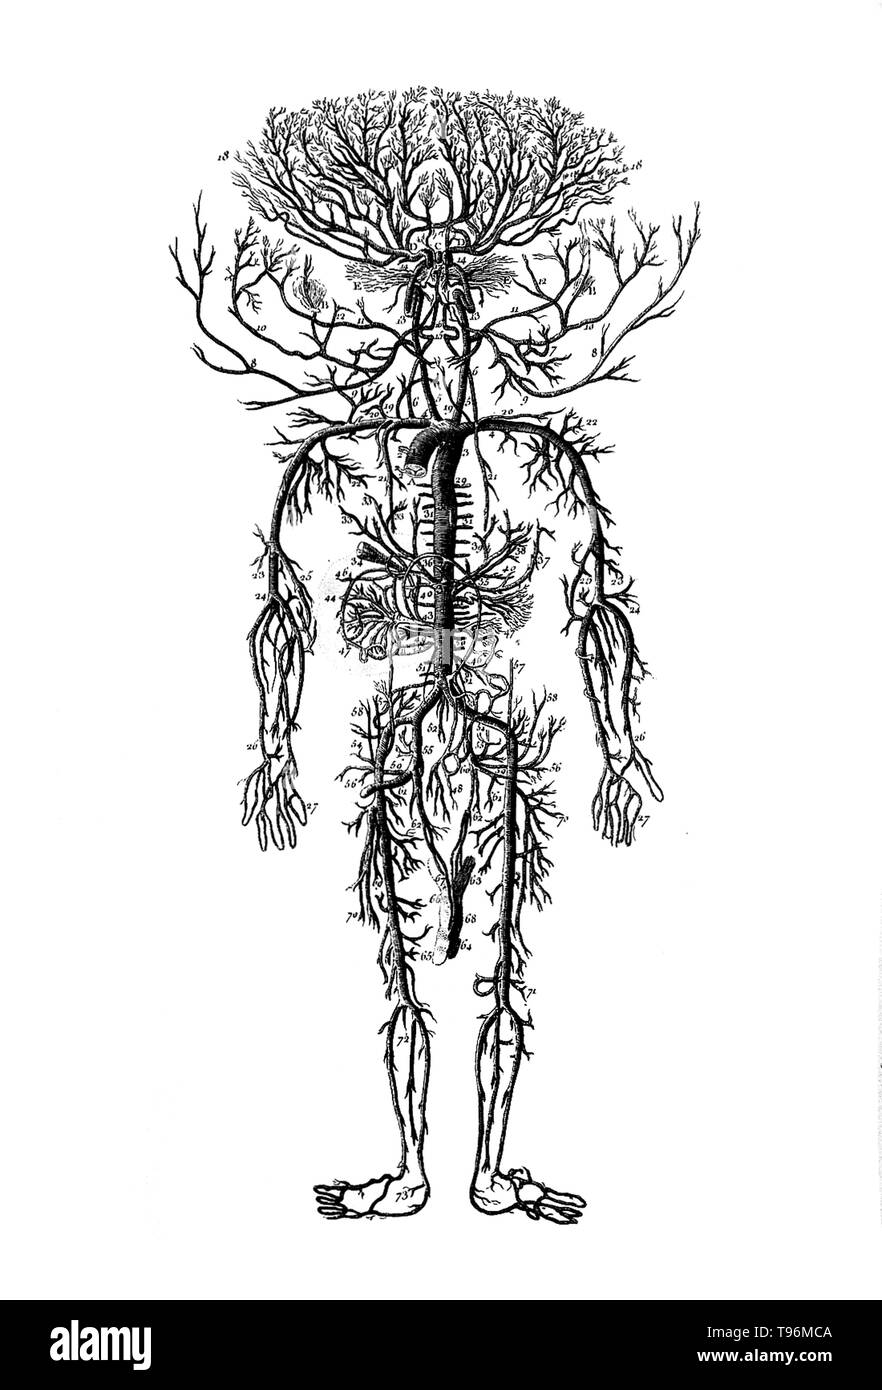 Les artères sont les vaisseaux sanguins qui prend le sang loin du coeur vers toutes les parties du corps. William Harvey décrit et popularisé le concept moderne de l'appareil circulatoire et les rôles des artères et des veines dans le 17e siècle. Banque D'Images